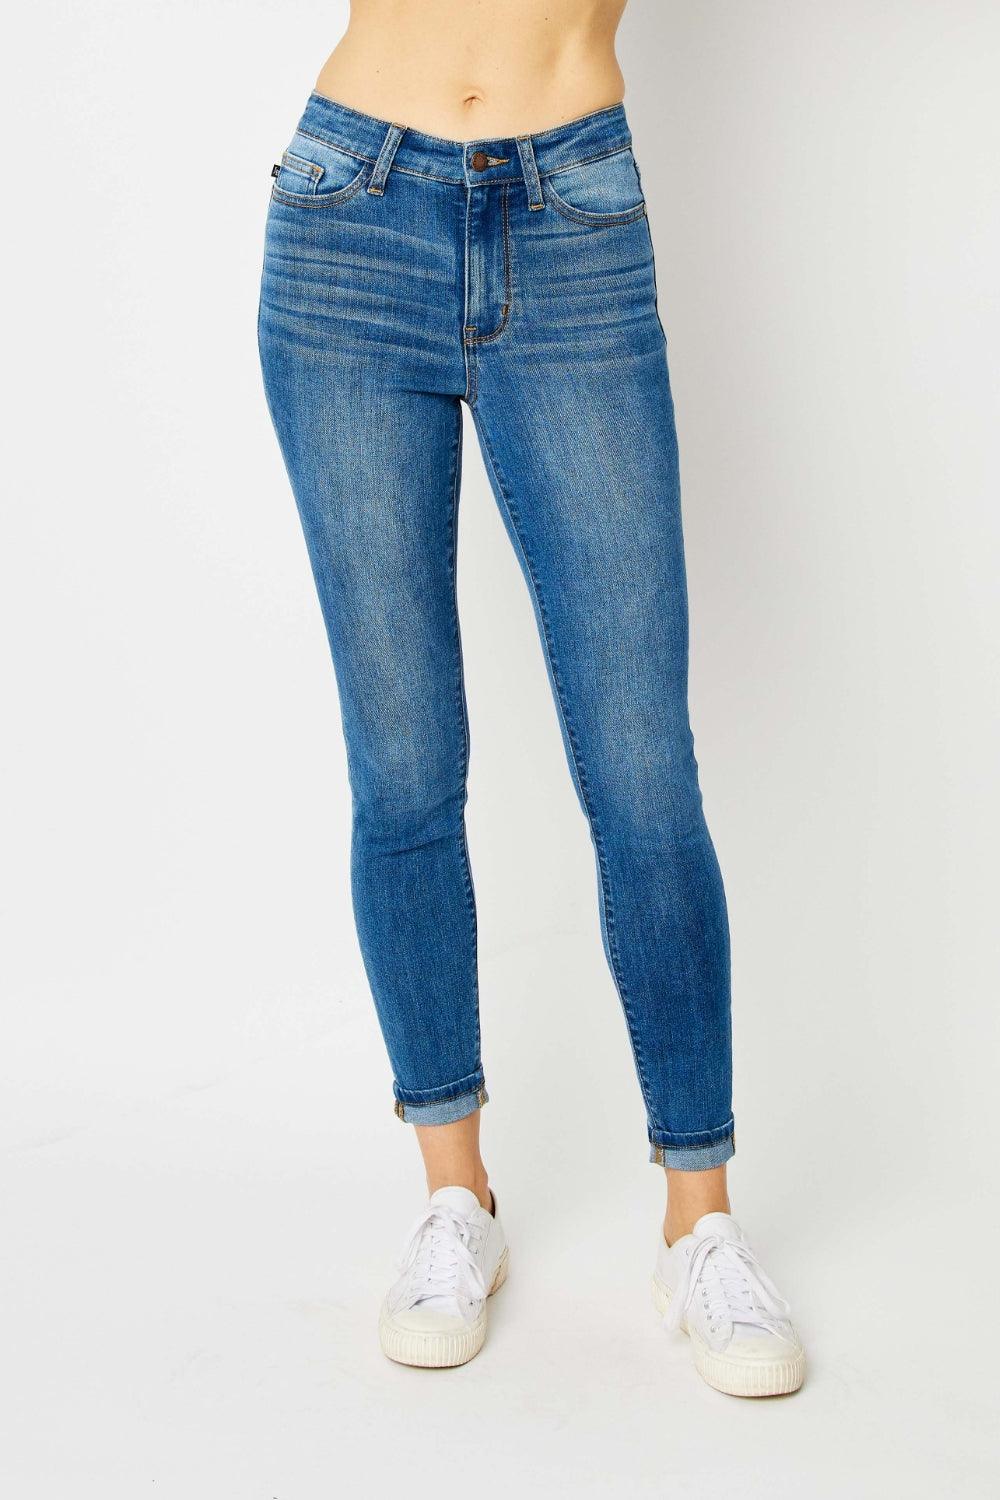 Judy Blue Full Size Cuffed Hem Low Waist Skinny Jeans Medium Jeans